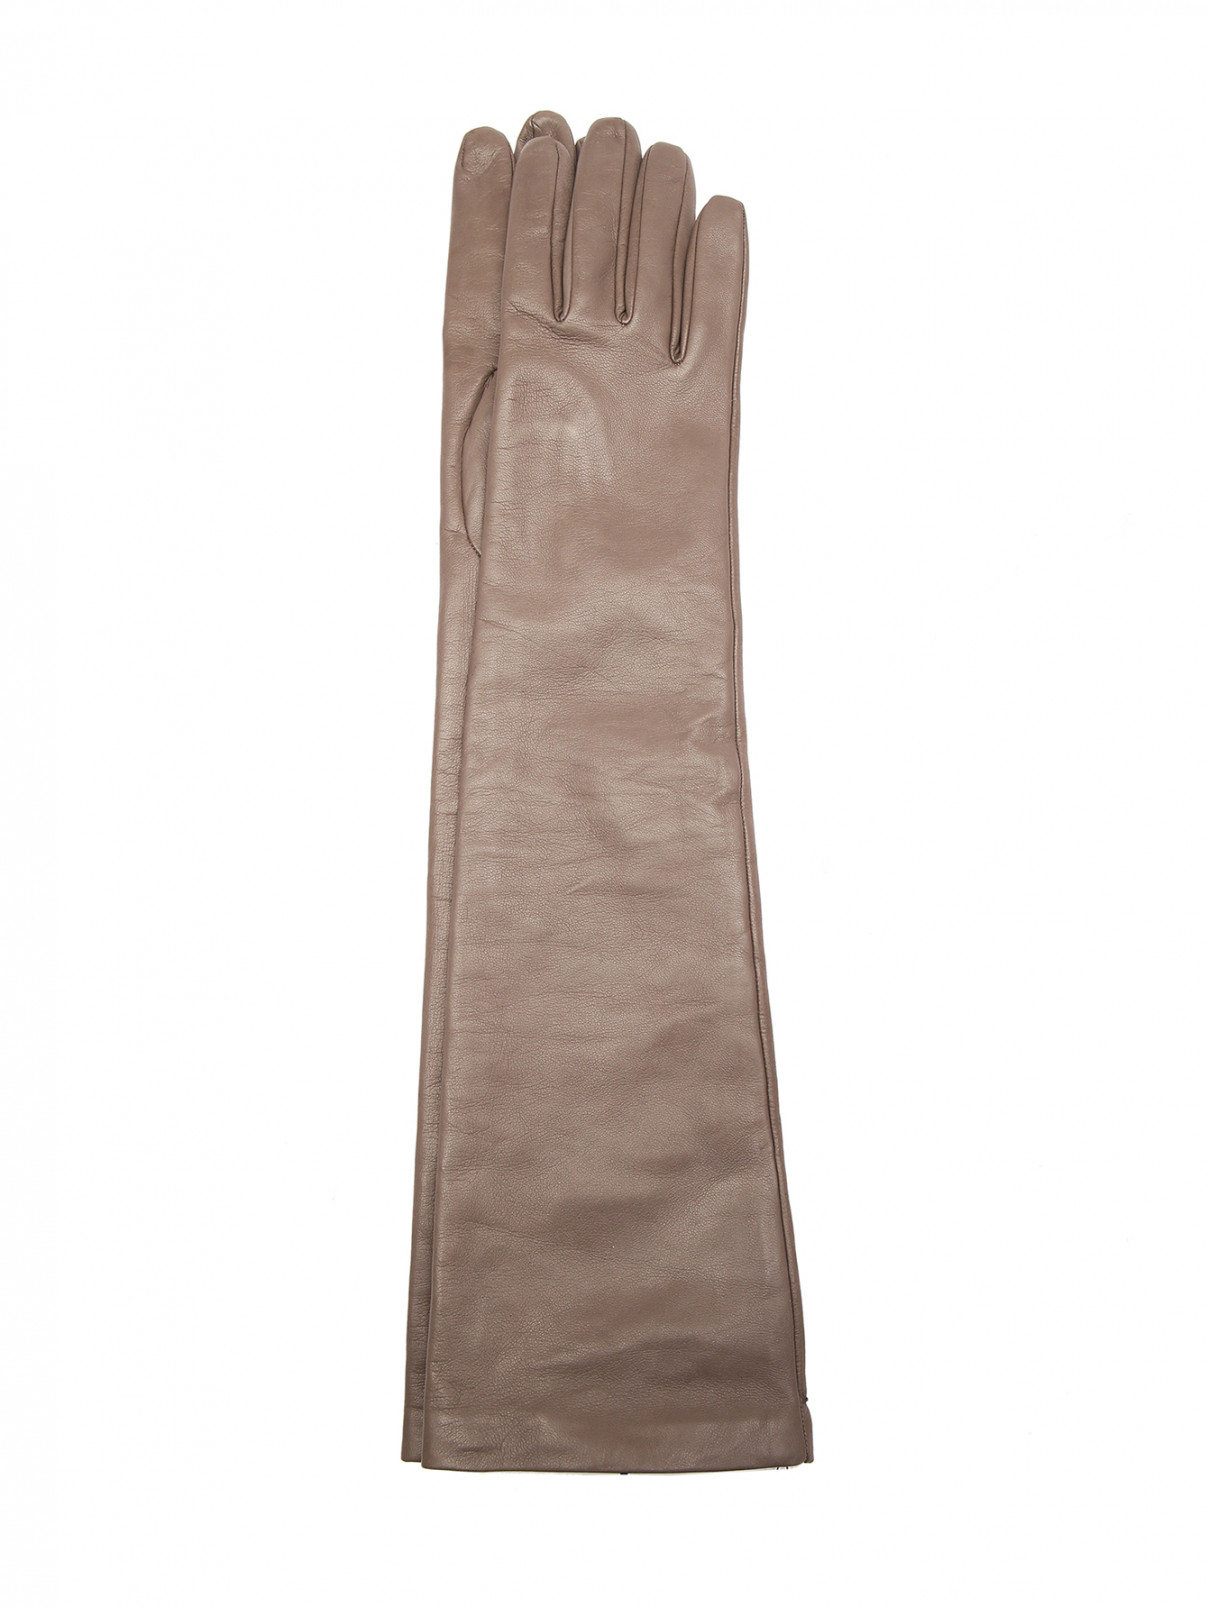 Высокие перчатки из кожи Marina Rinaldi  –  Общий вид  – Цвет:  Серый